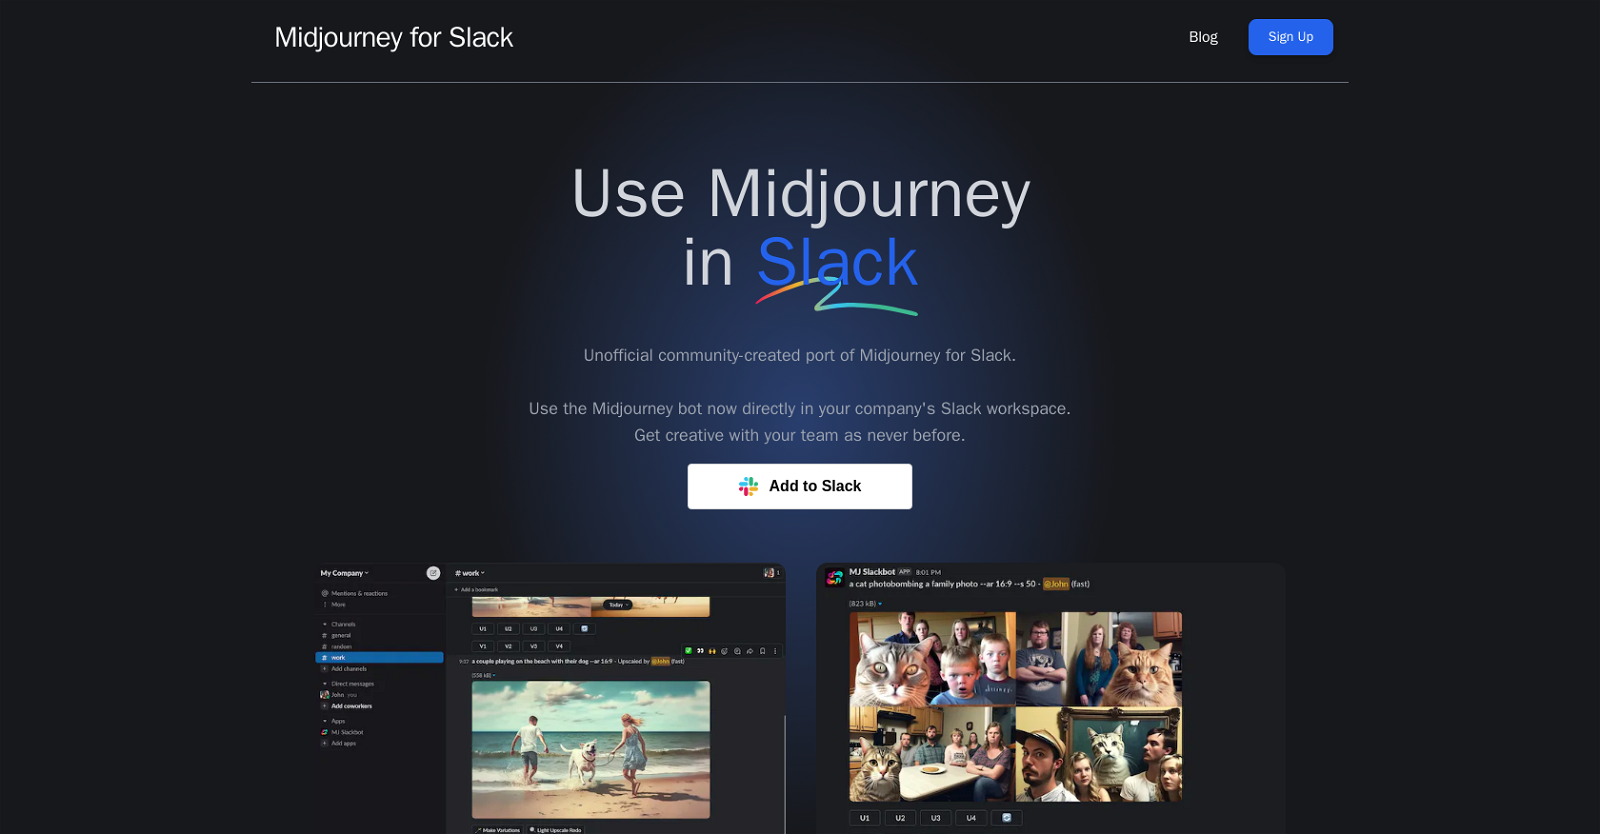 Midjourney for Slack website